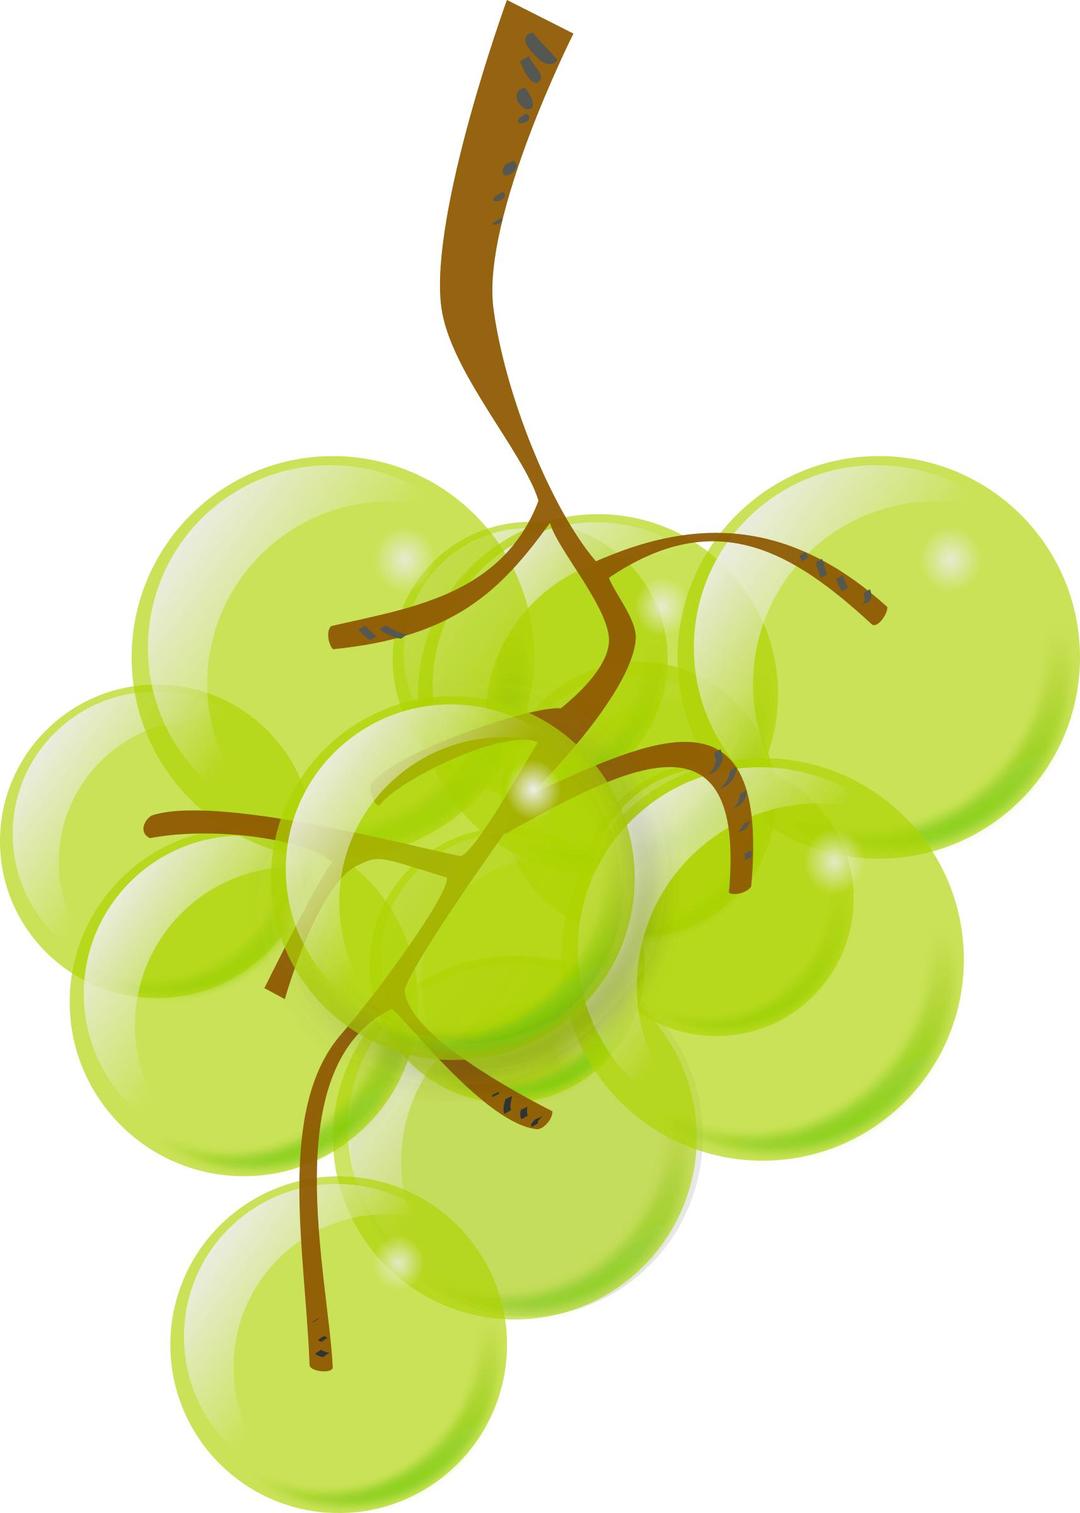 green grapes png transparent